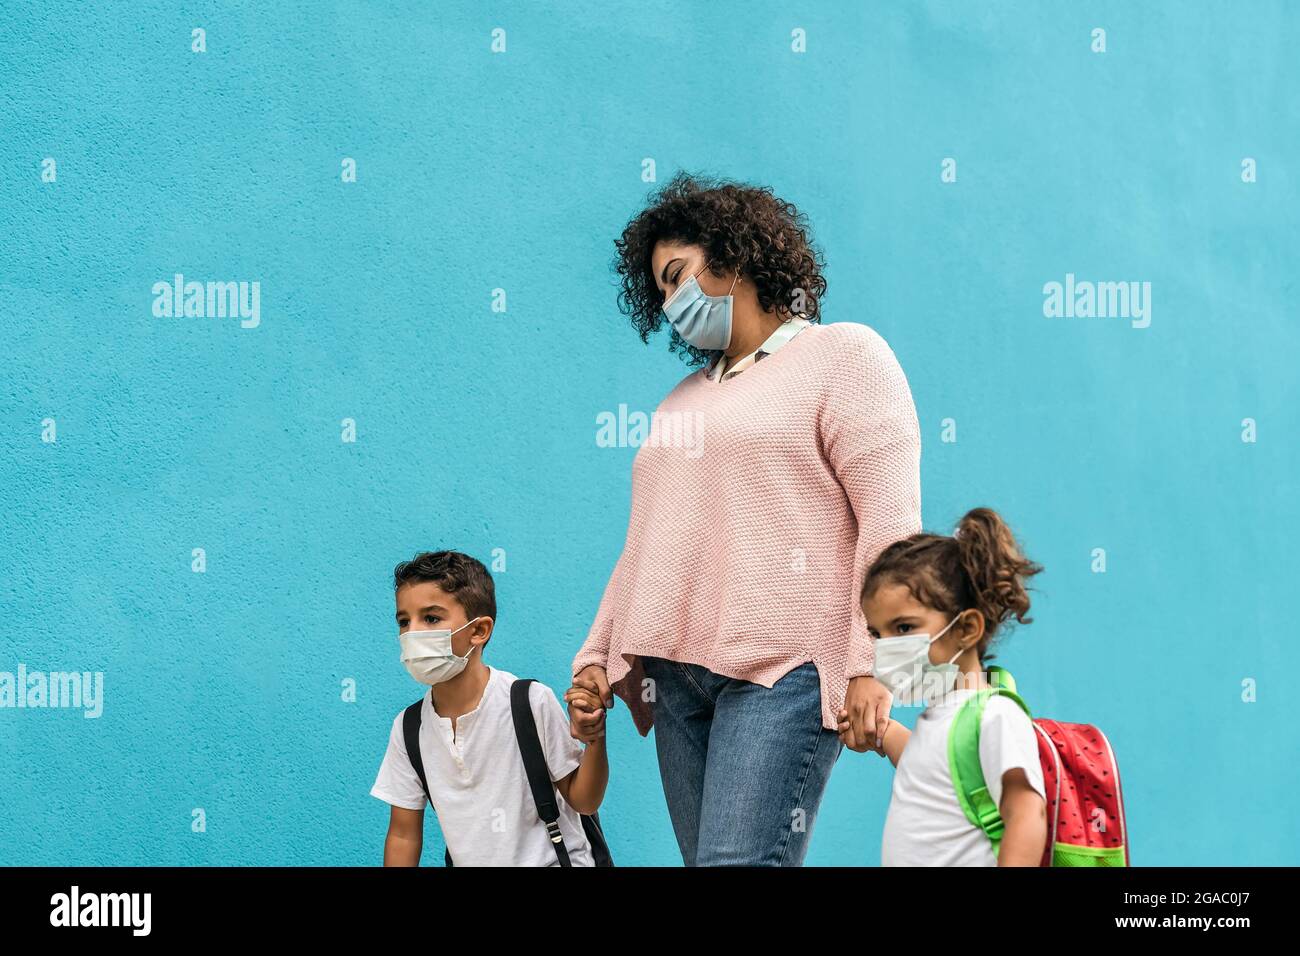 Mutter mit Sohn und Tochter zurück zur Schule, während sie Gesichtsschutzmaske während einer Coronavirus-Pandemie trug - Gesundheits- und Bildungskonzept Stockfoto